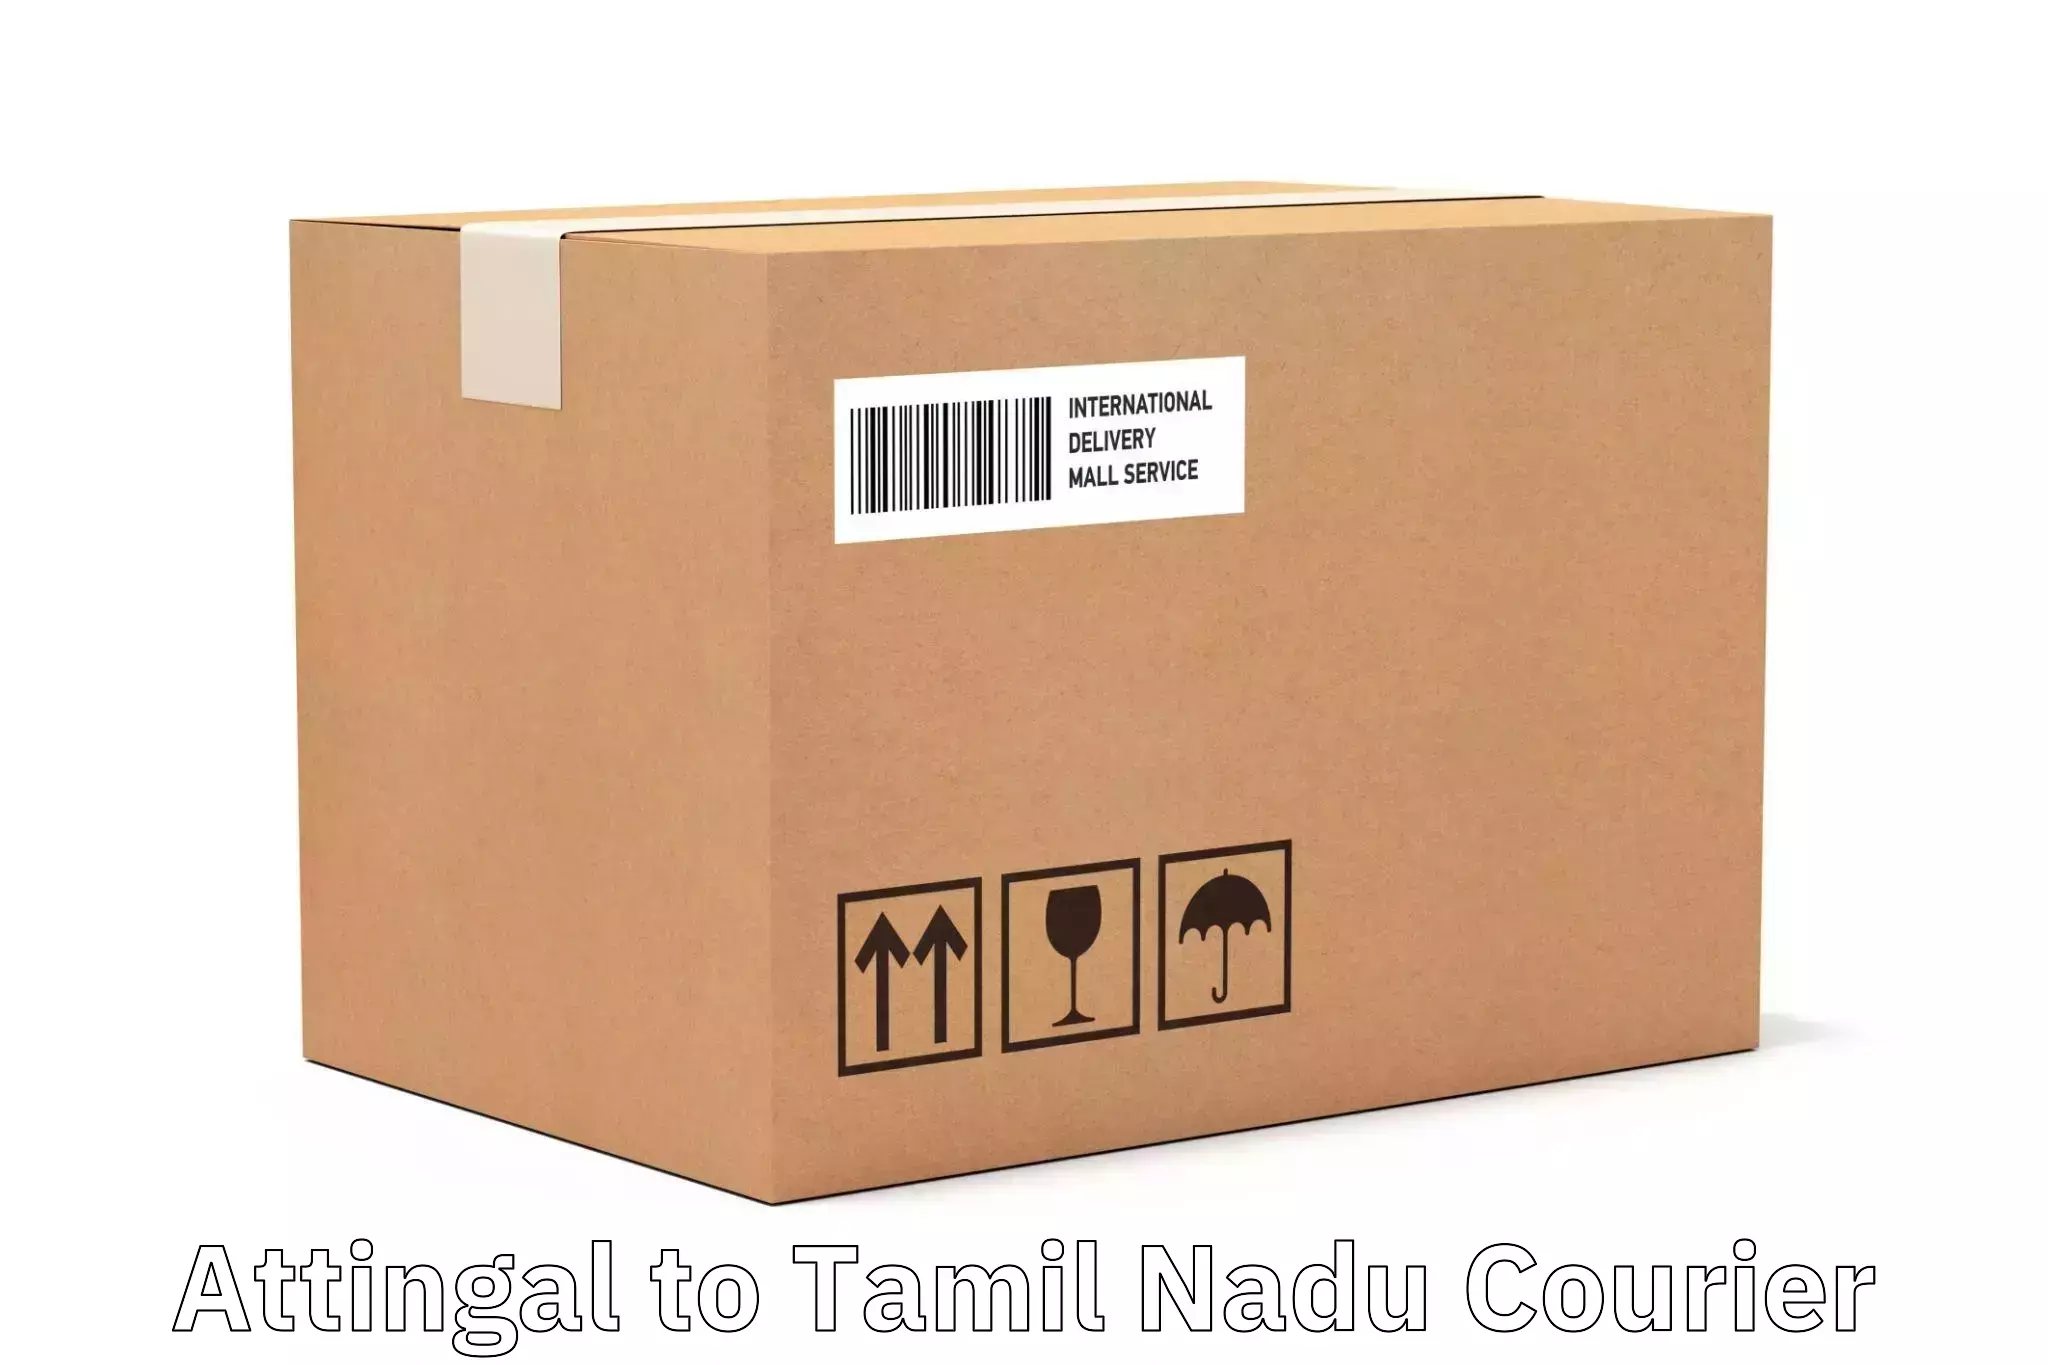 Express package handling Attingal to Kulittalai